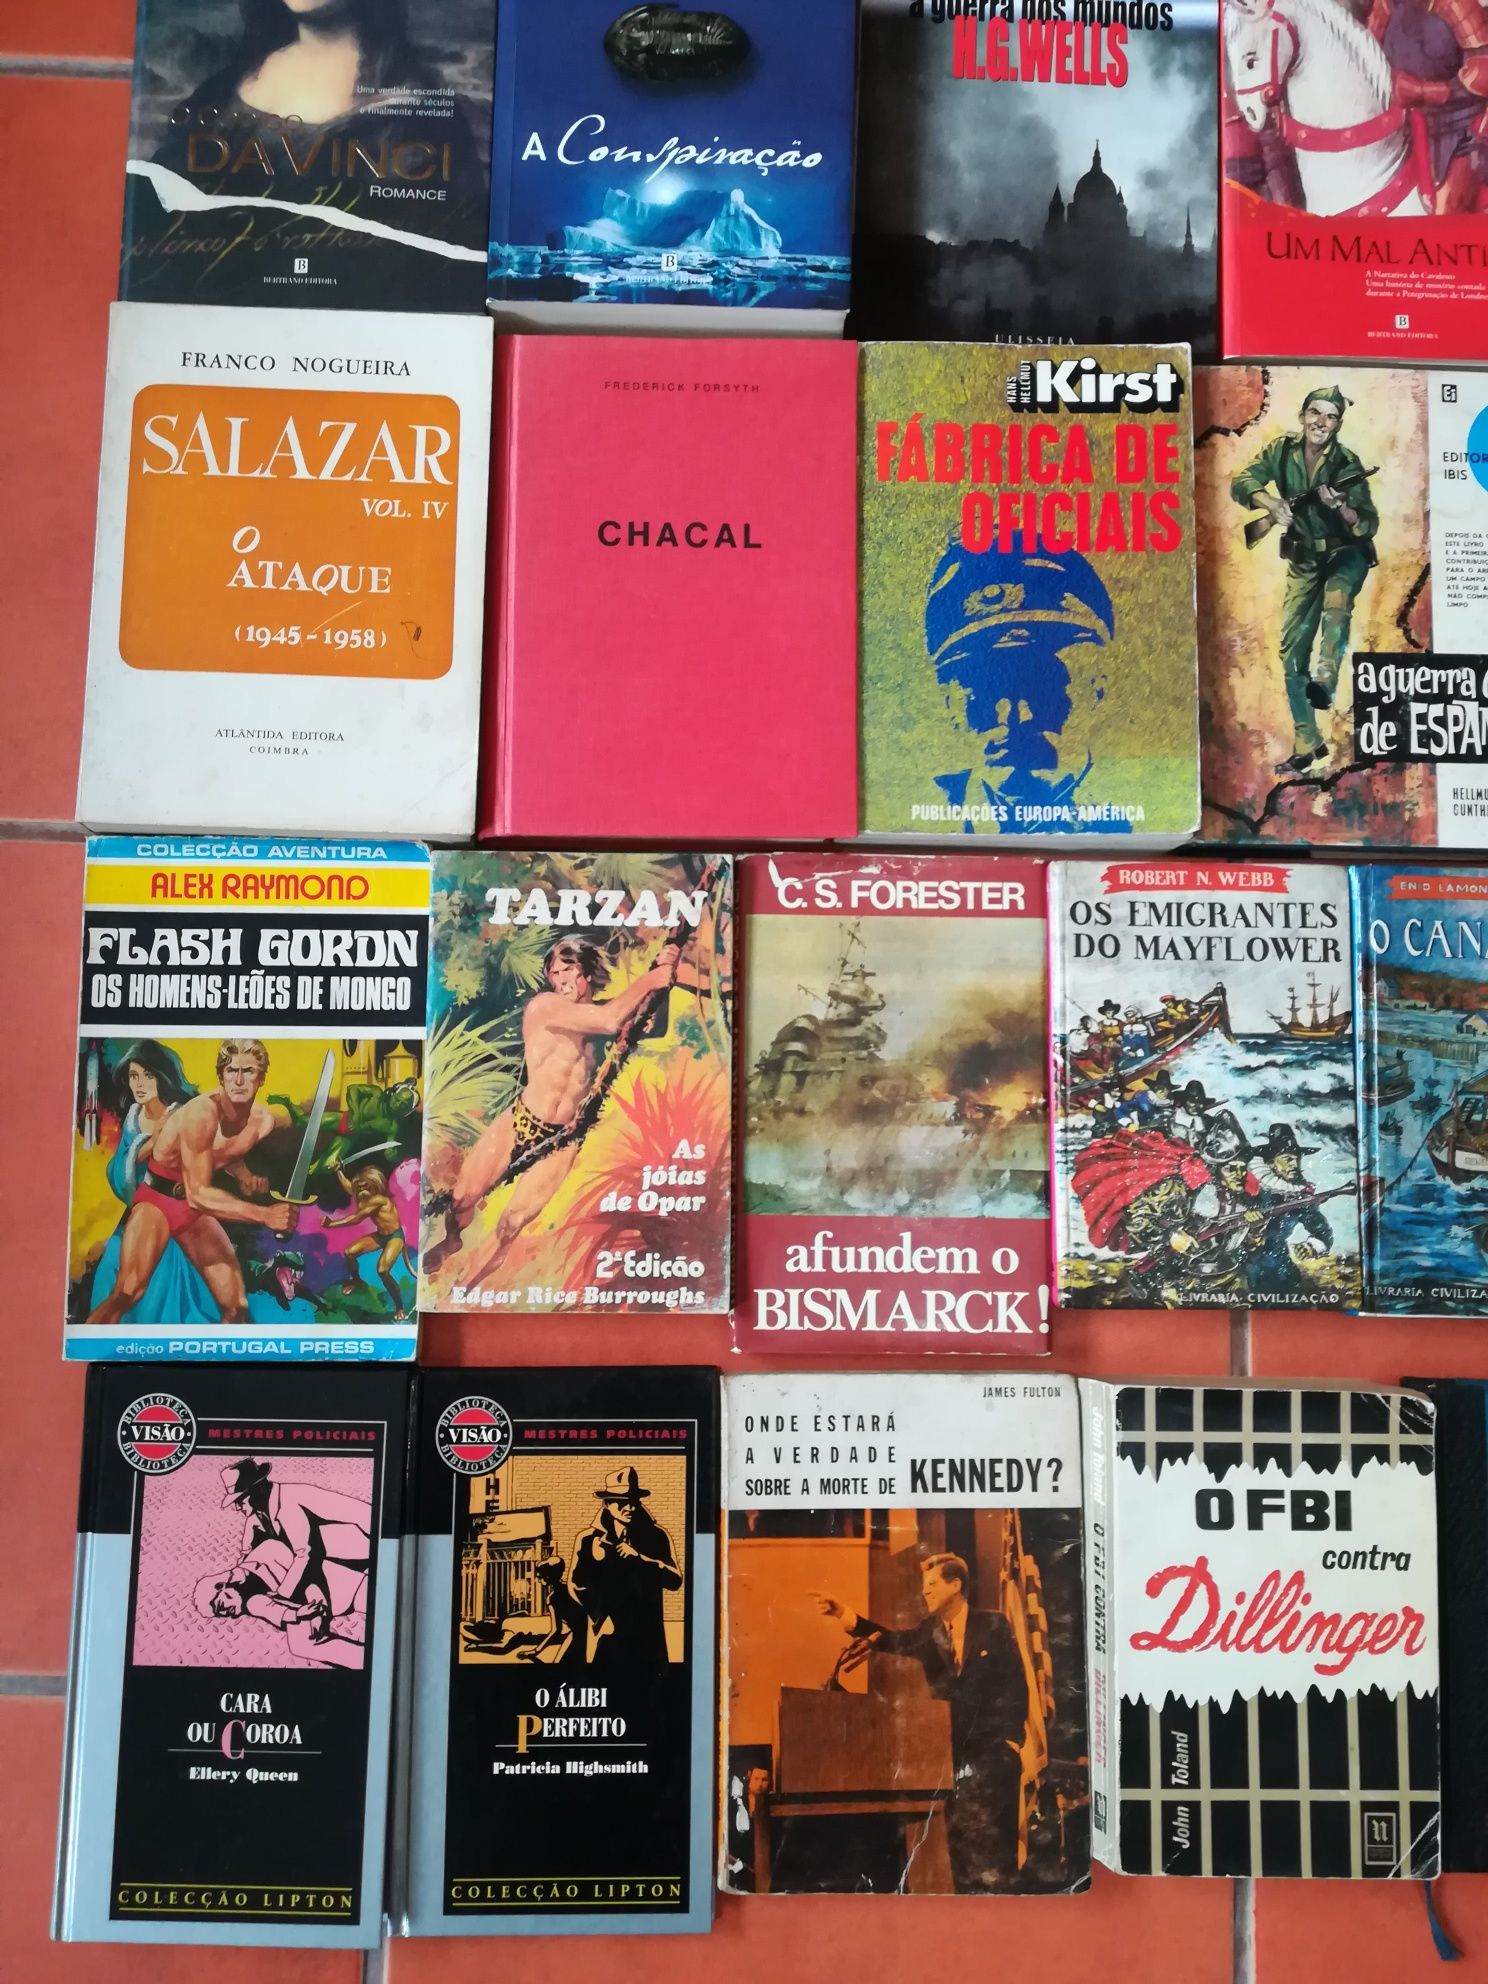 38 Livros de José Rodrigues dos Santos e outros